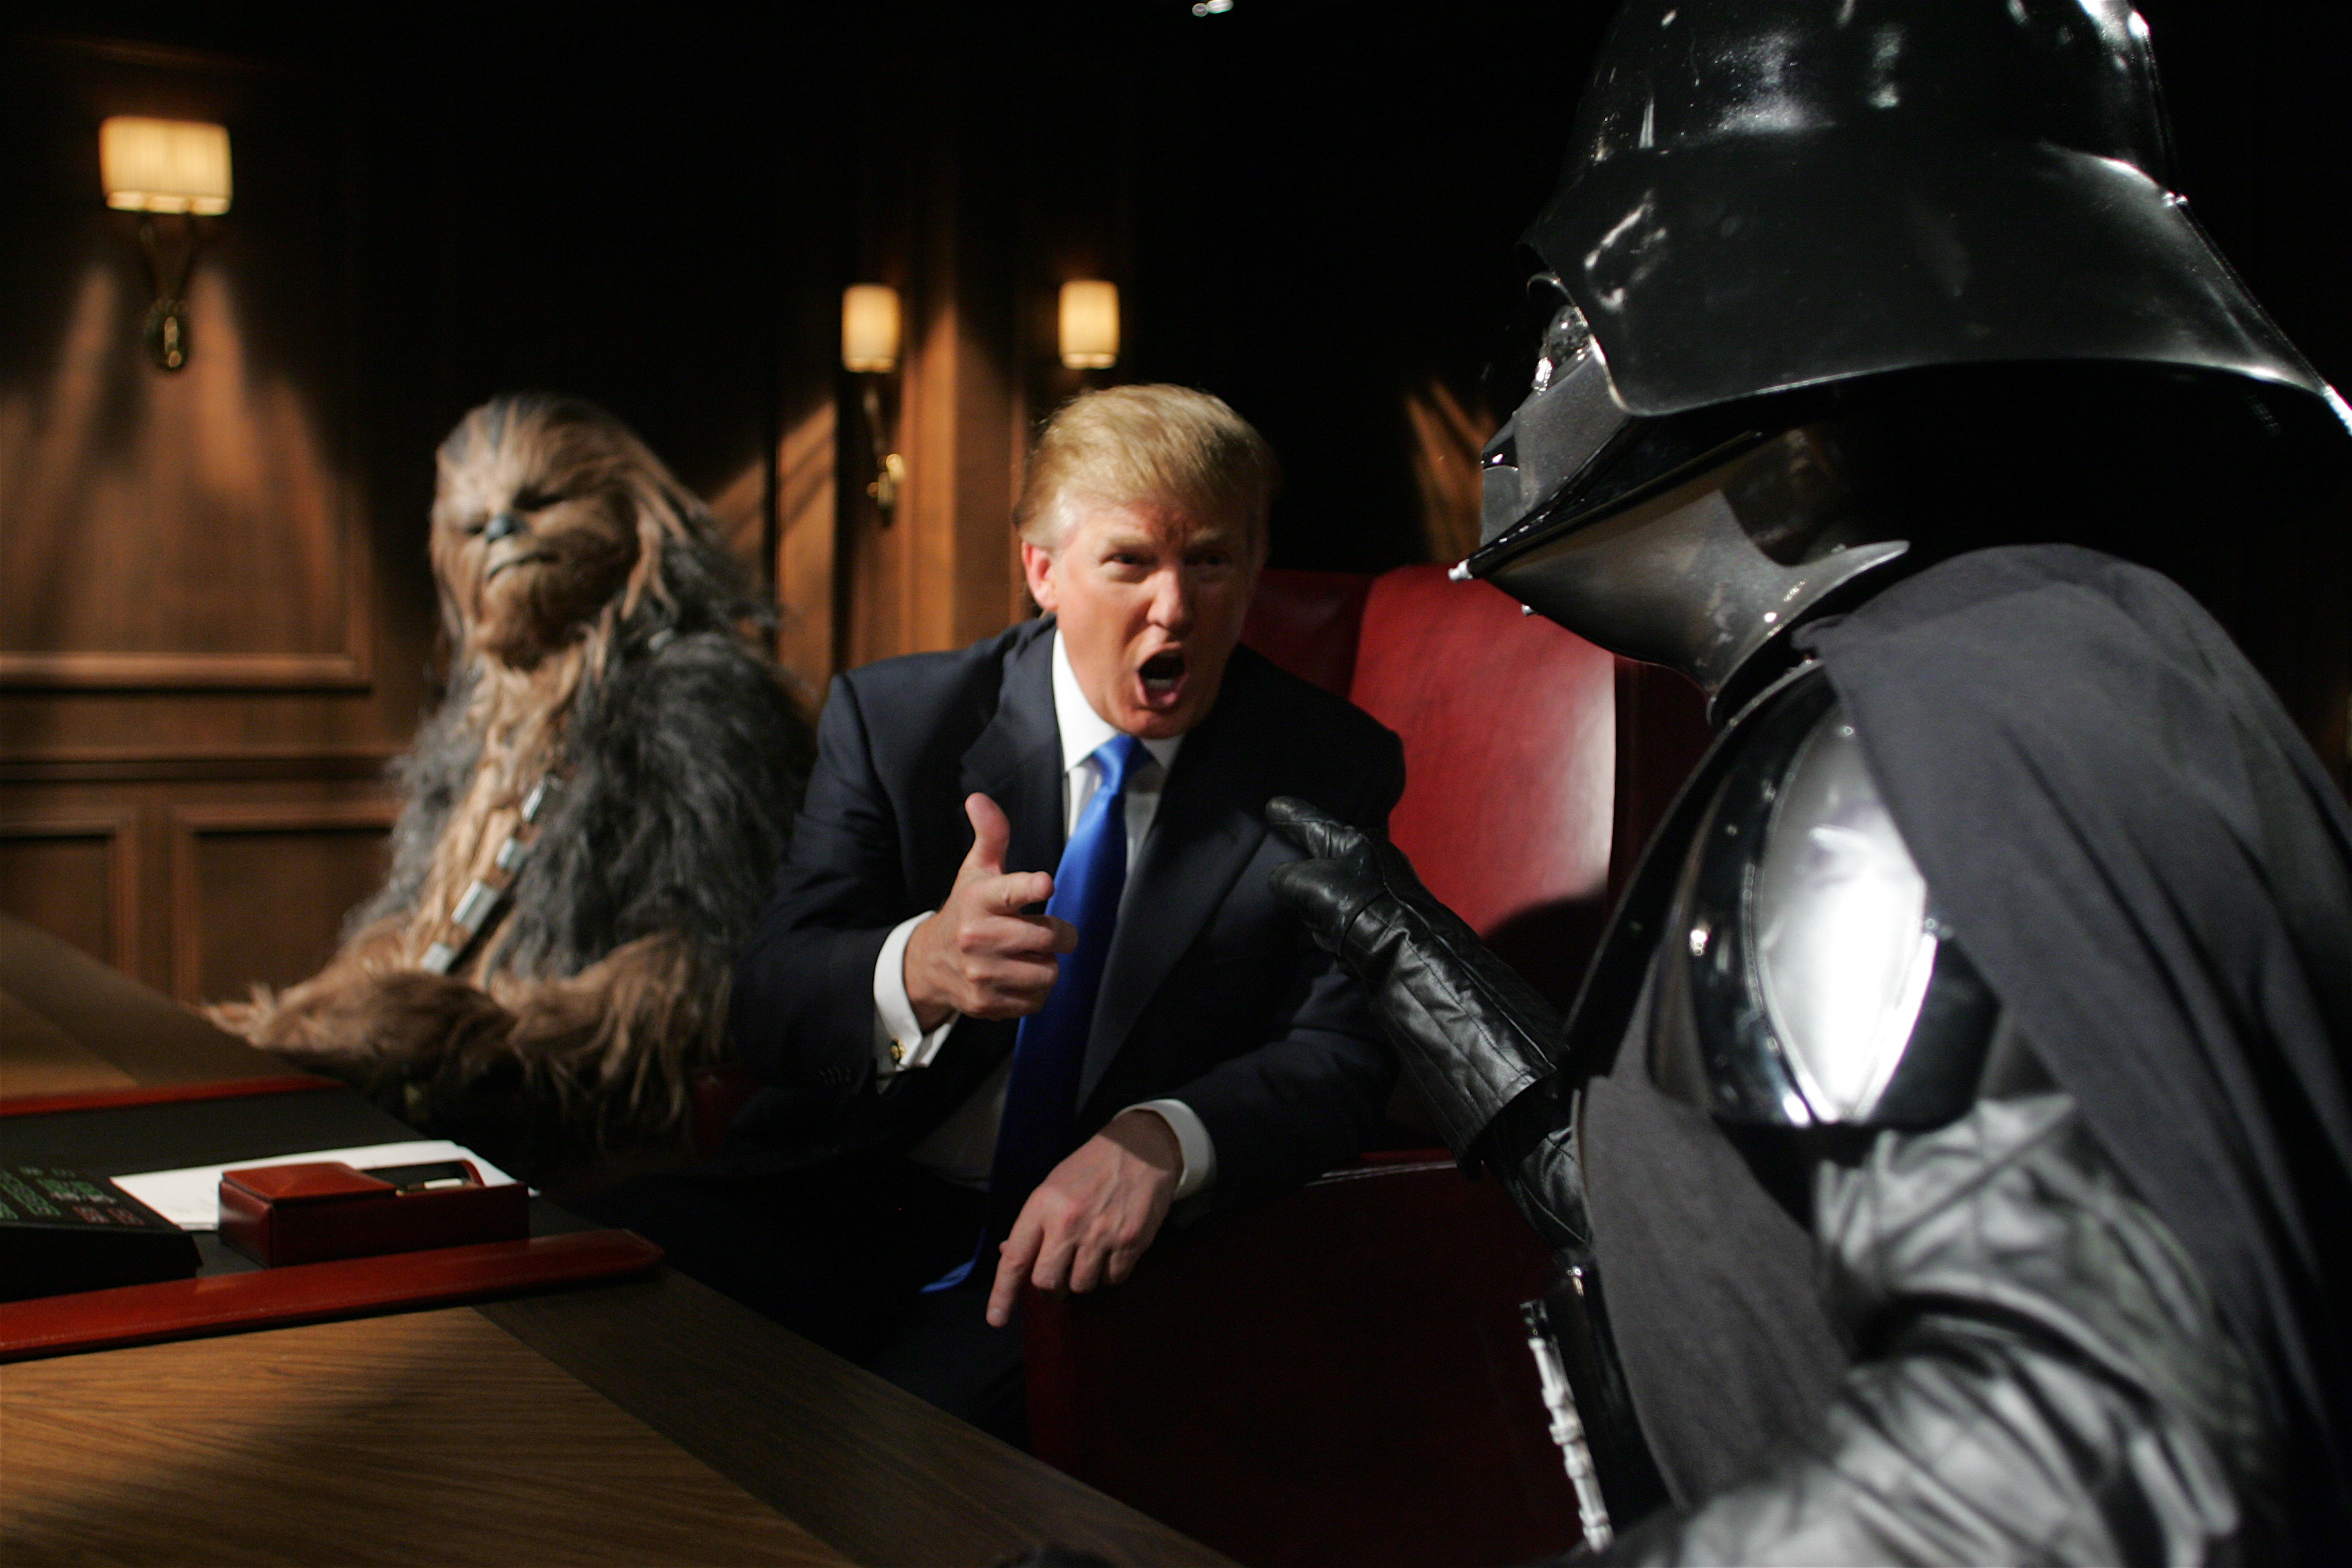 Star Wars Trump